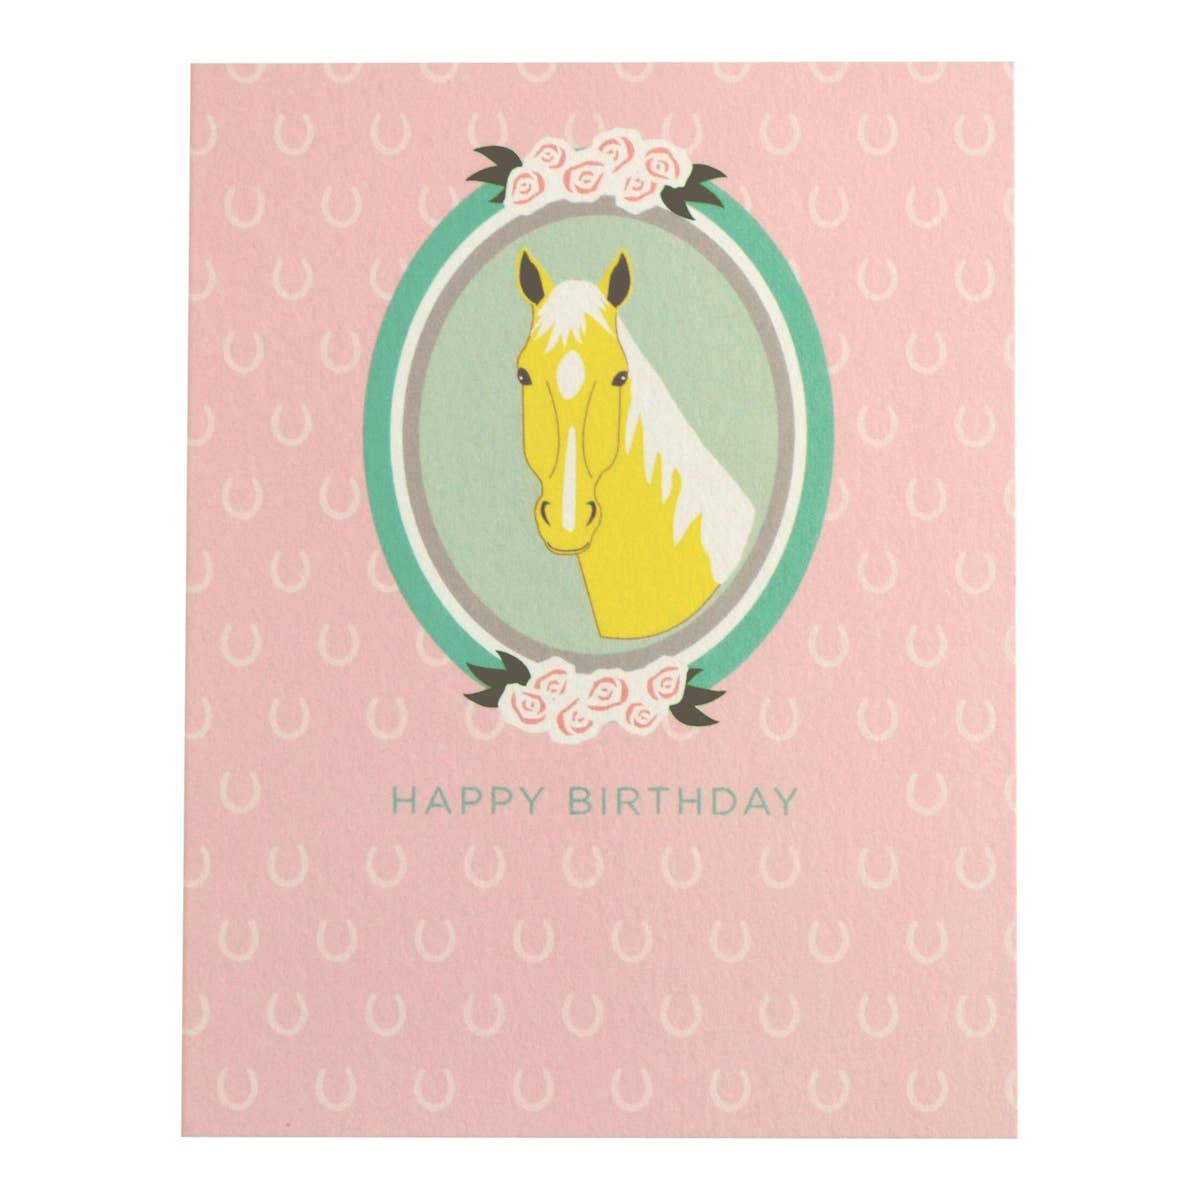 REVEL & Co. - Horse Birthday Card (blank inside)